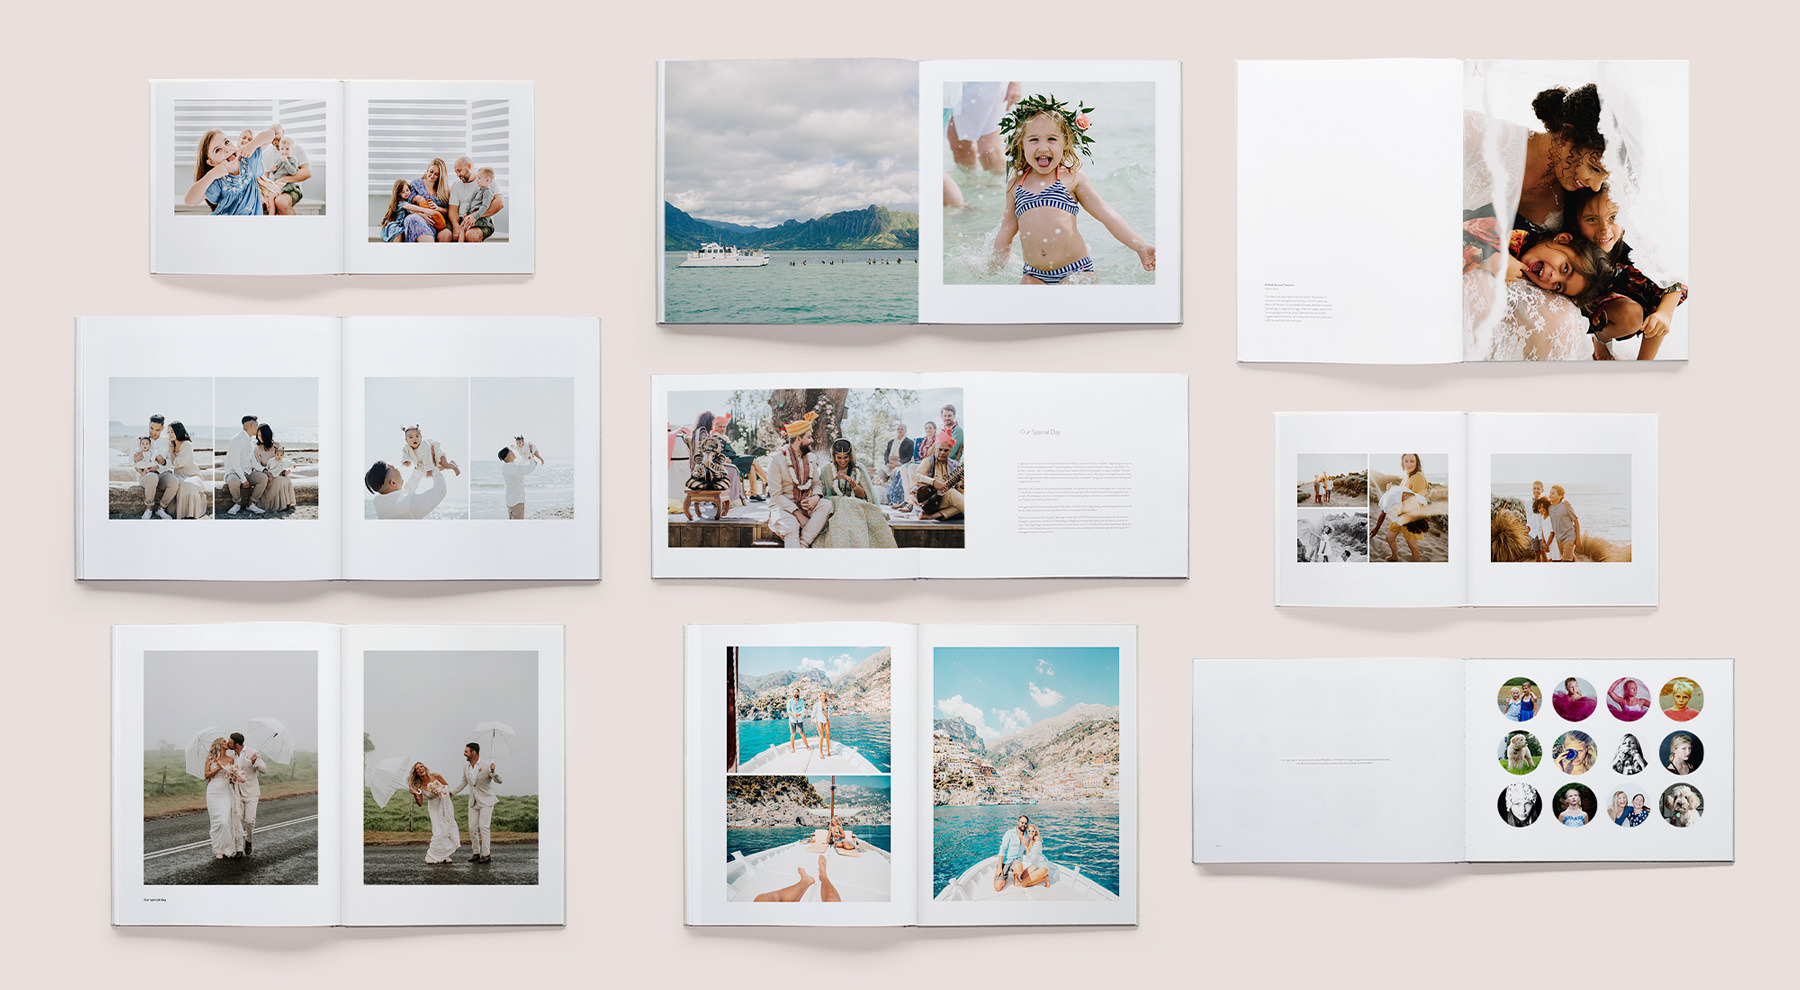 Neun aufgeschlagene Fotobücher mit MILK-Designvorlagen.